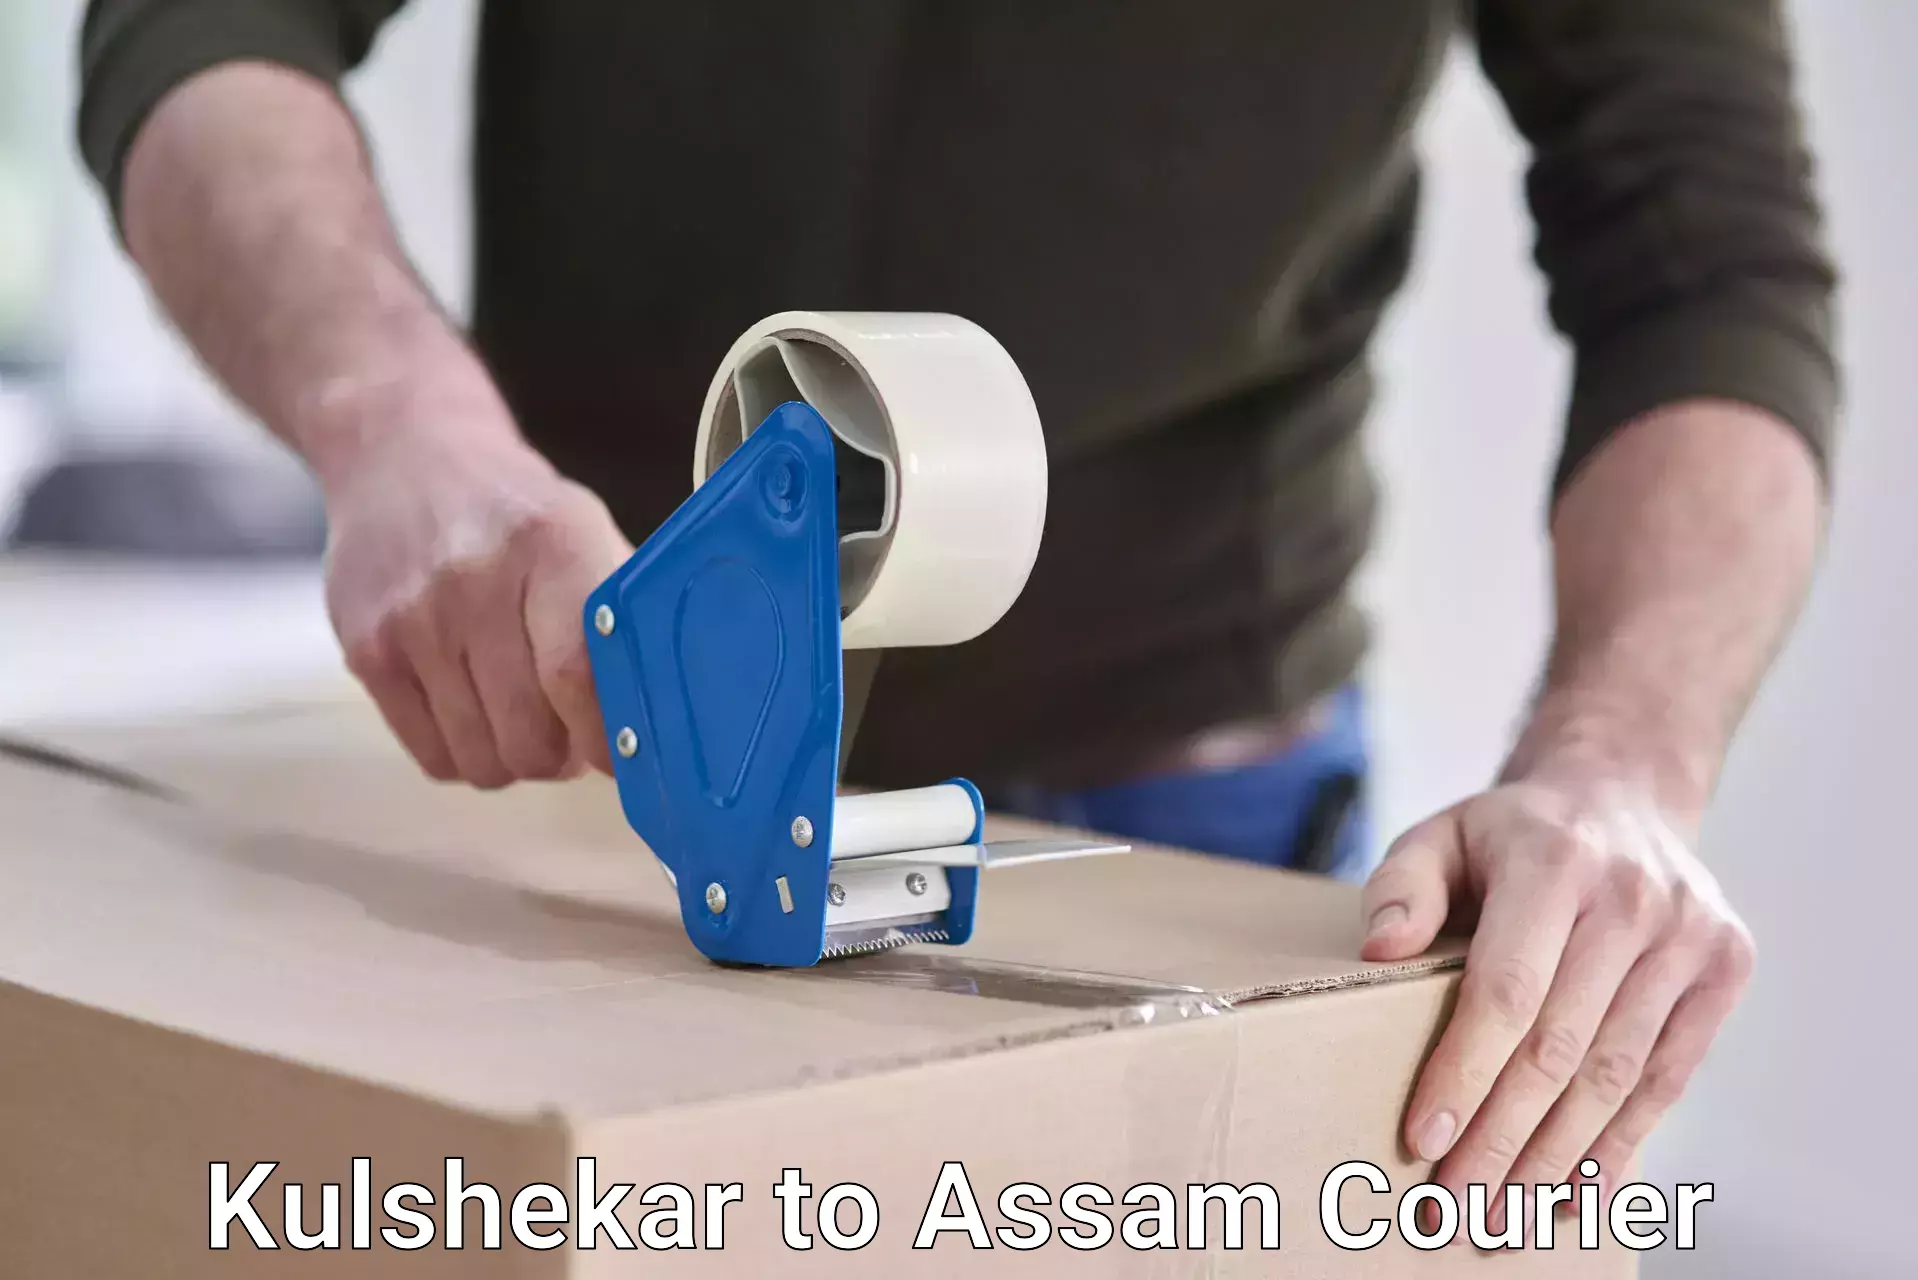 Easy return solutions Kulshekar to Assam